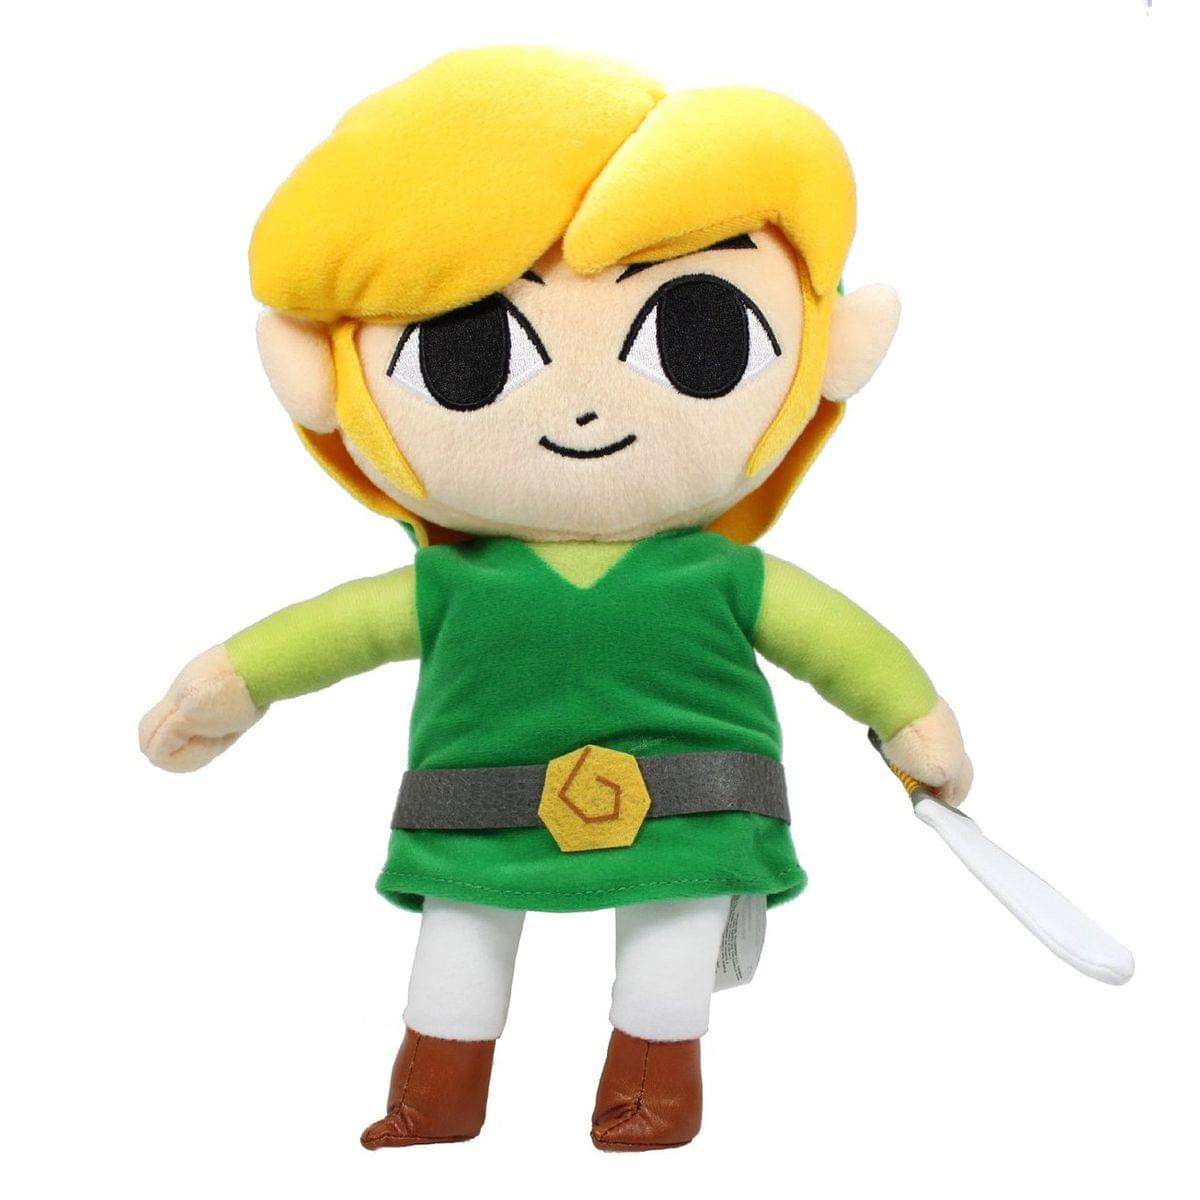 Link from The Legend of Zelda concept! : r/funkopop